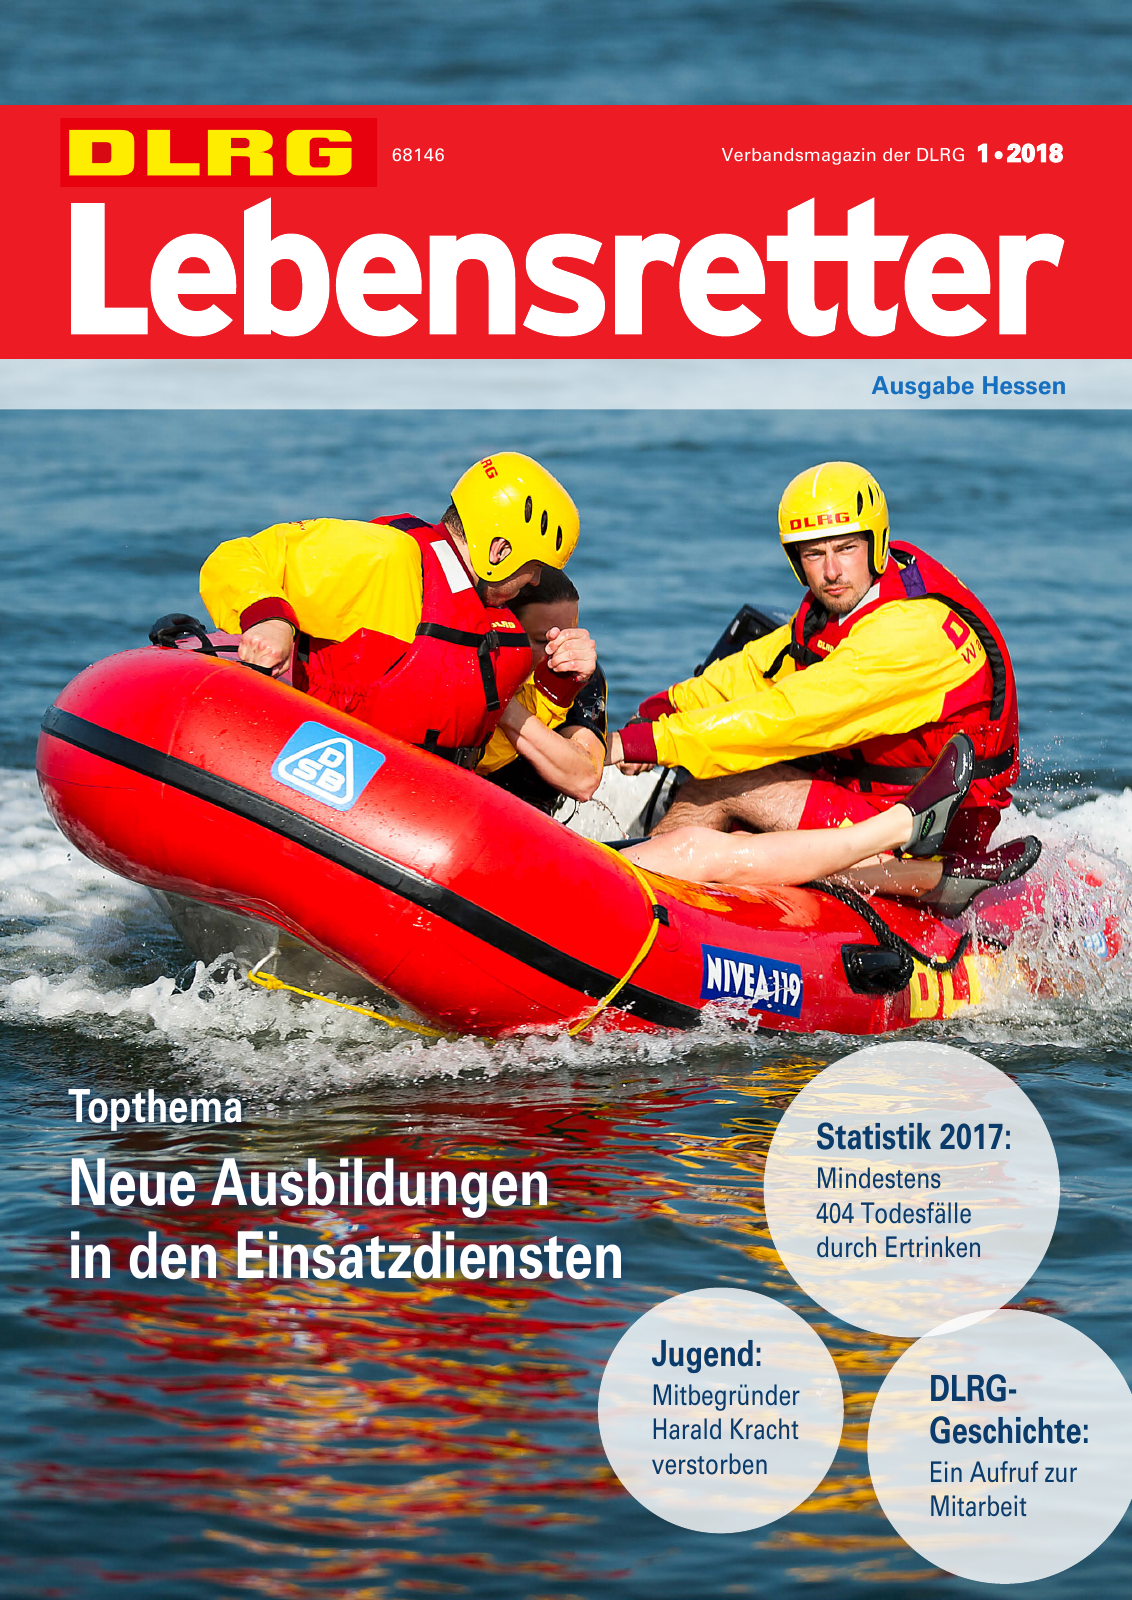 Vorschau Lebensretter 1/2018 - Regionalausgabe Hessen Seite 1